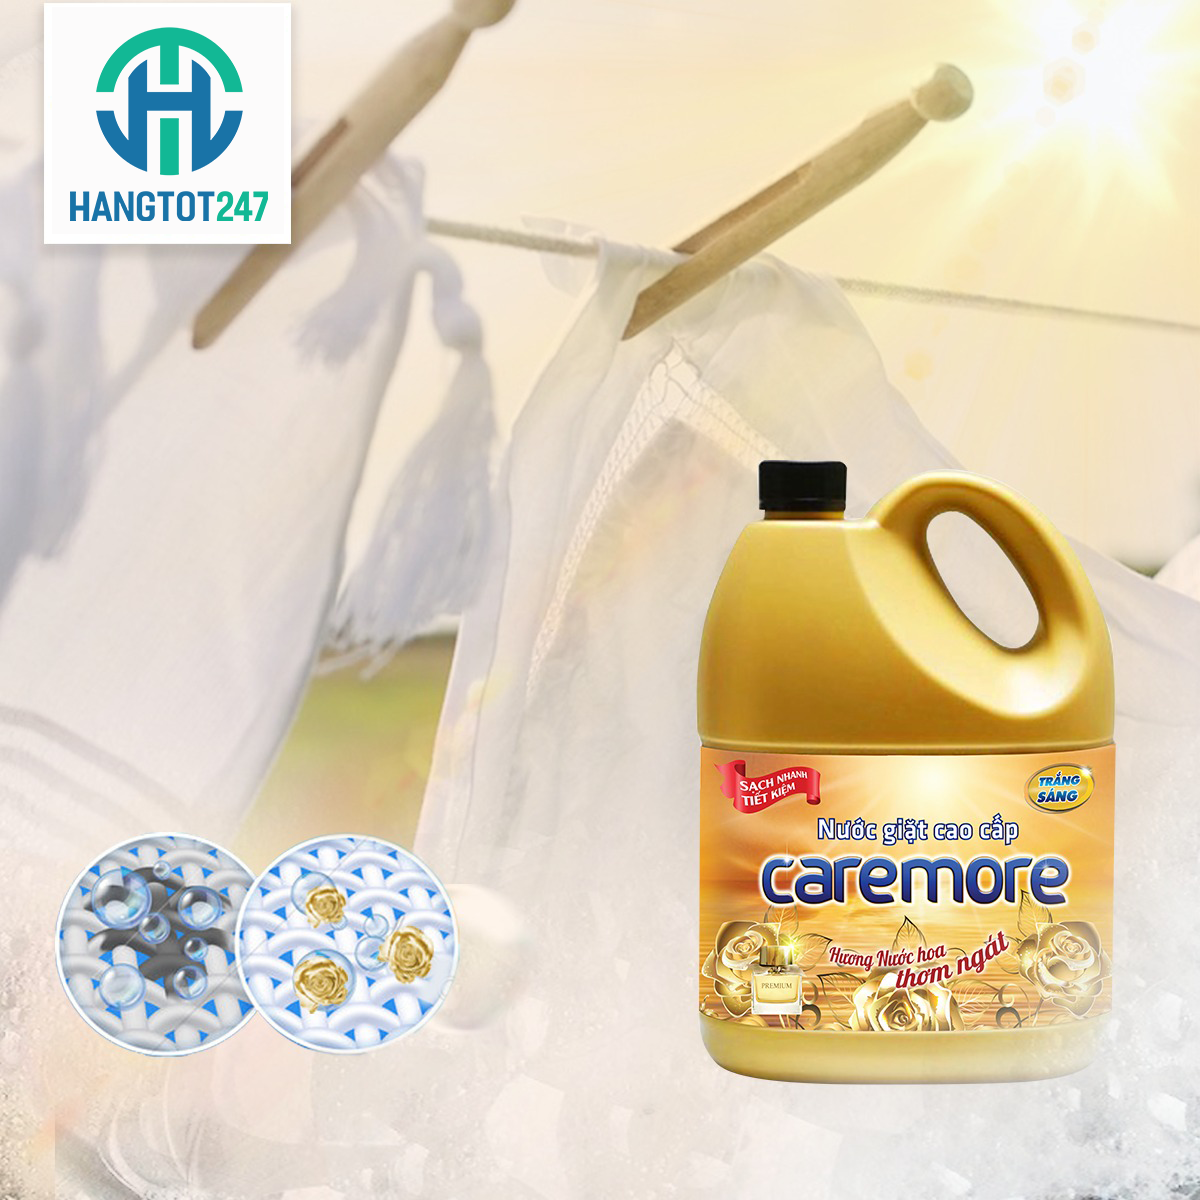 Nâng tầm giặt là với nước giặt Caremore hương nước hoa